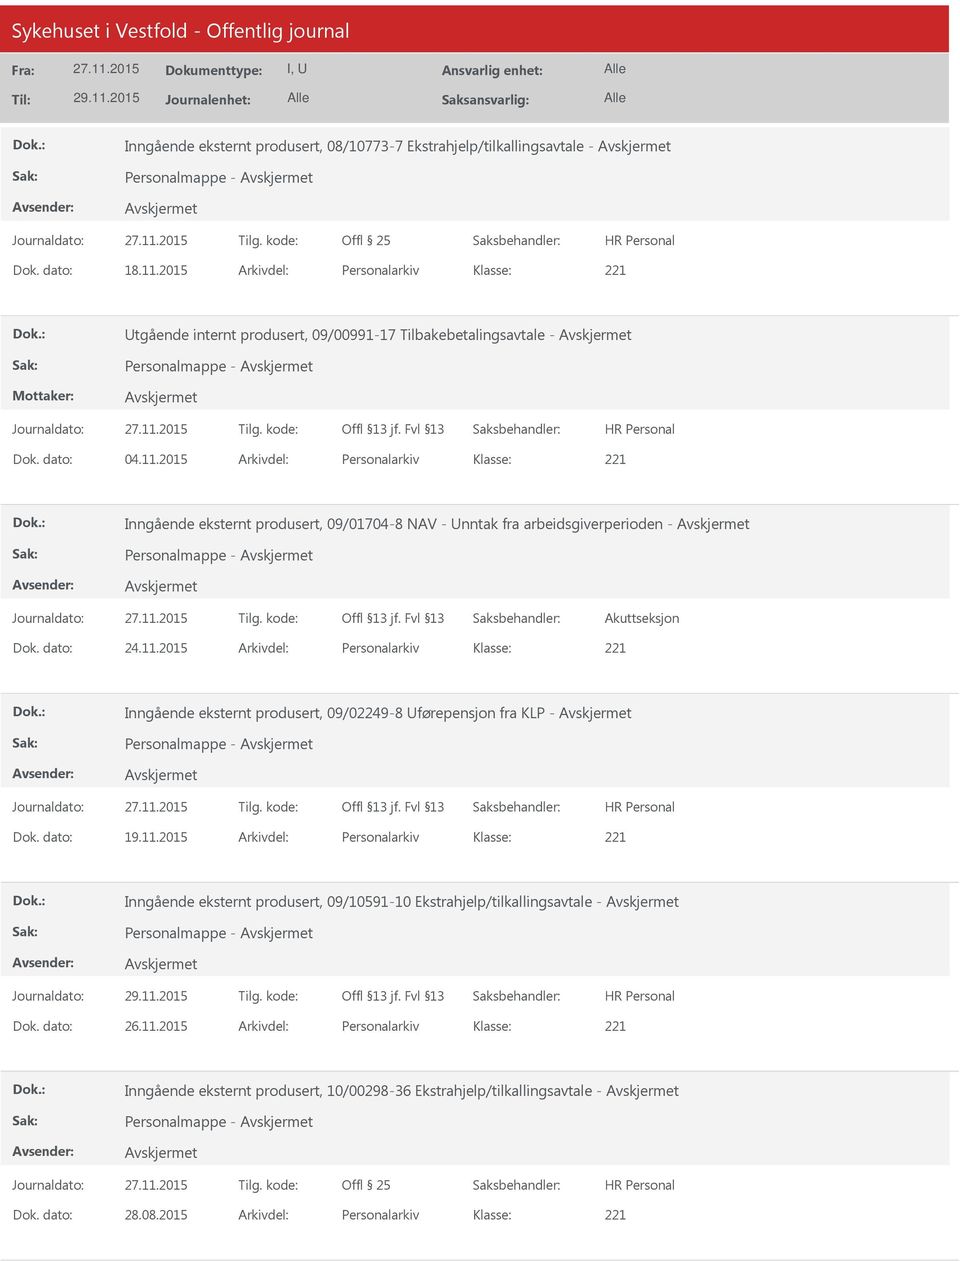 2015 Arkivdel: Personalarkiv Inngående eksternt produsert, 09/01704-8 NAV - nntak fra arbeidsgiverperioden - Personalmappe - Akuttseksjon Dok. dato: 24.11.